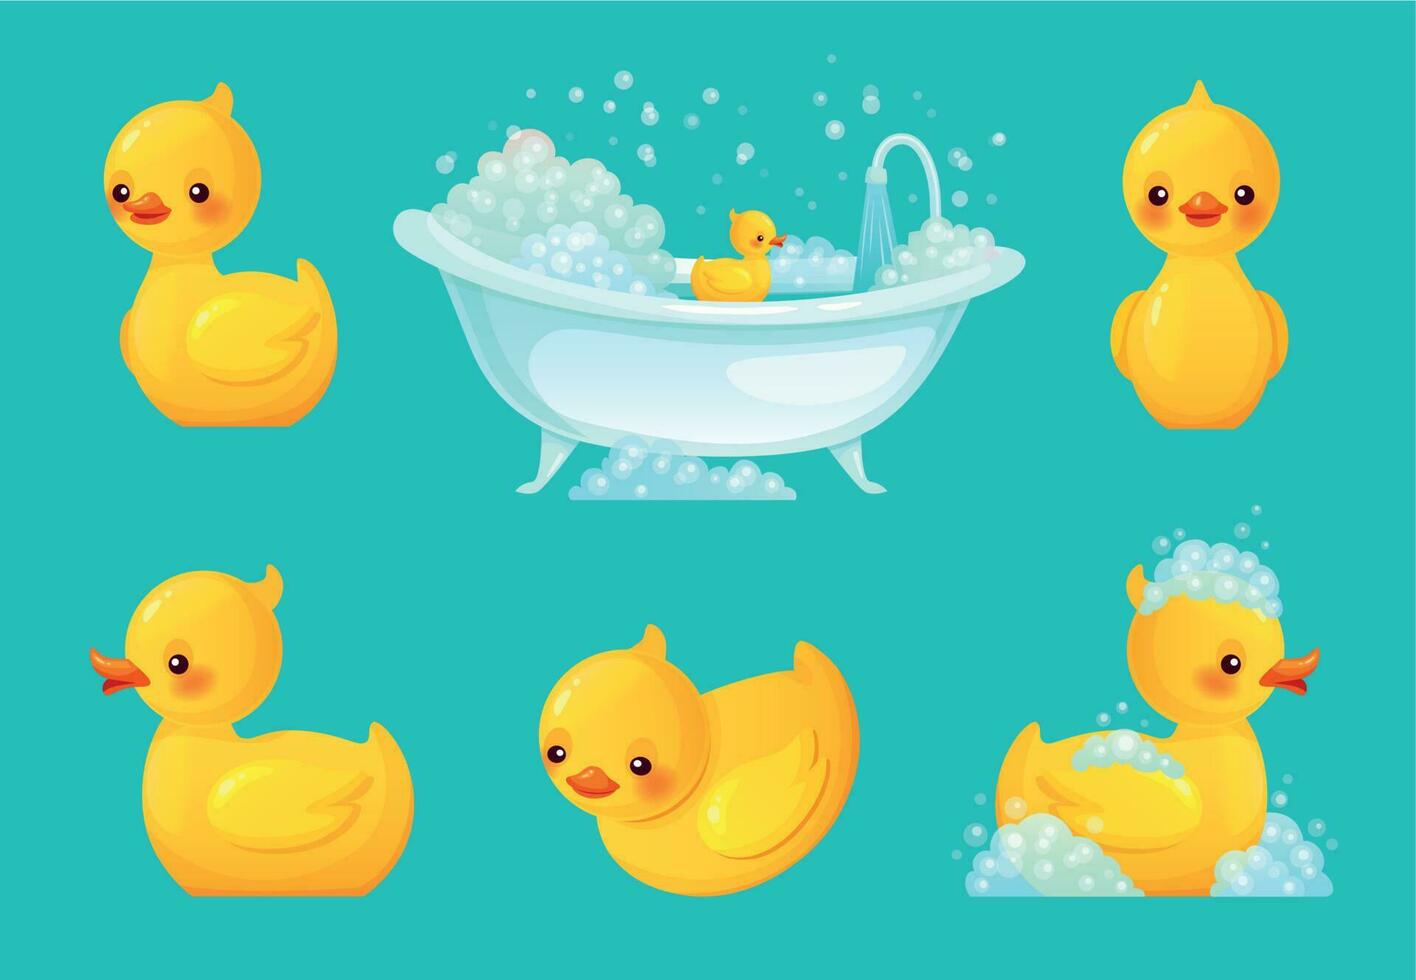 Jaune une baignoire canard. salle de bains baignoire avec mousse, relaxant baignade et spa caoutchouc canards dessin animé vecteur illustration